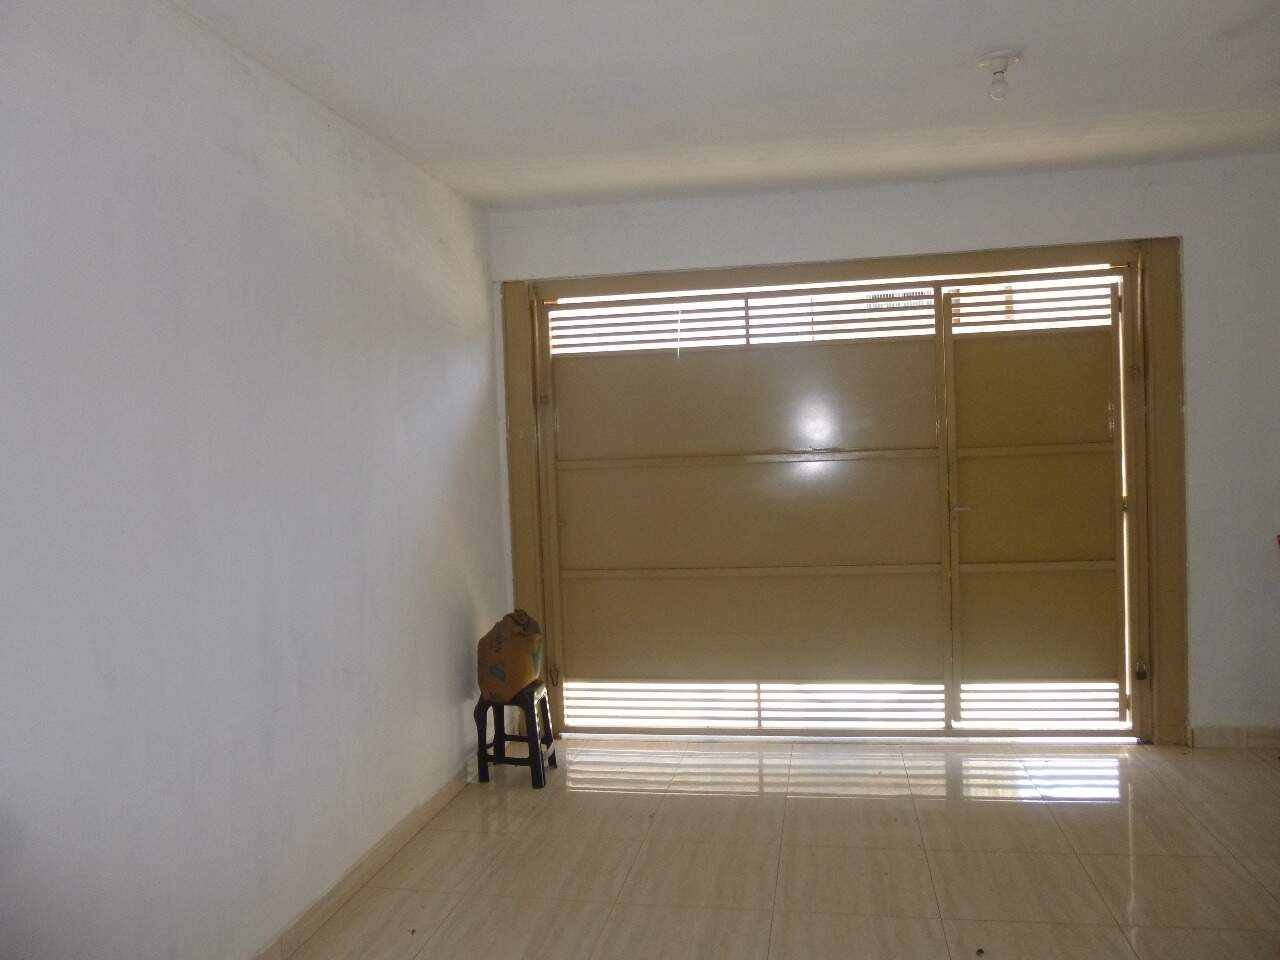 Casa à venda, 1 quarto, sendo 1 suíte, 2 vagas, no bairro Parque São Jorge em Piracicaba - SP